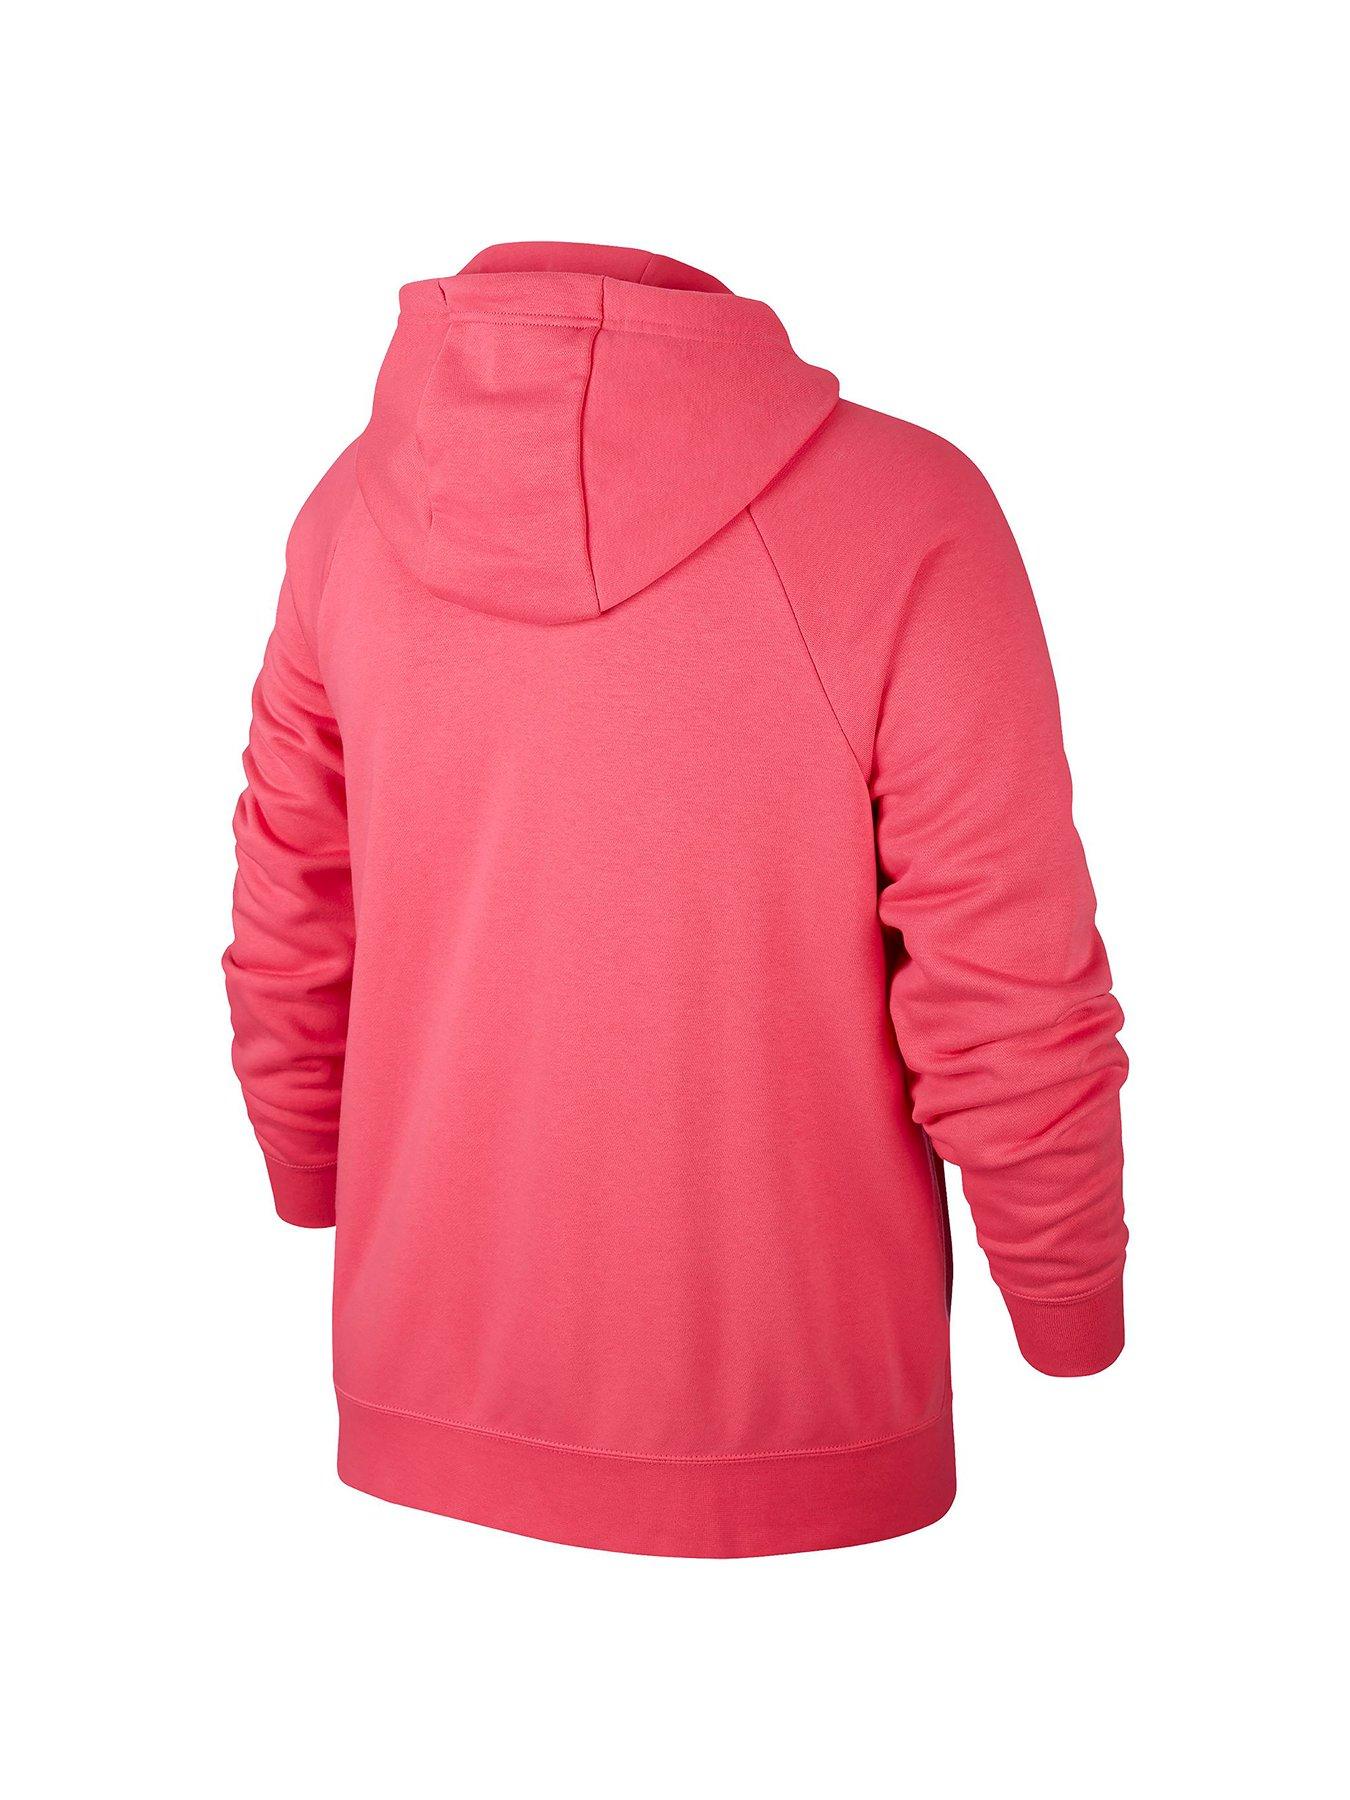 watermelon pink nike hoodie